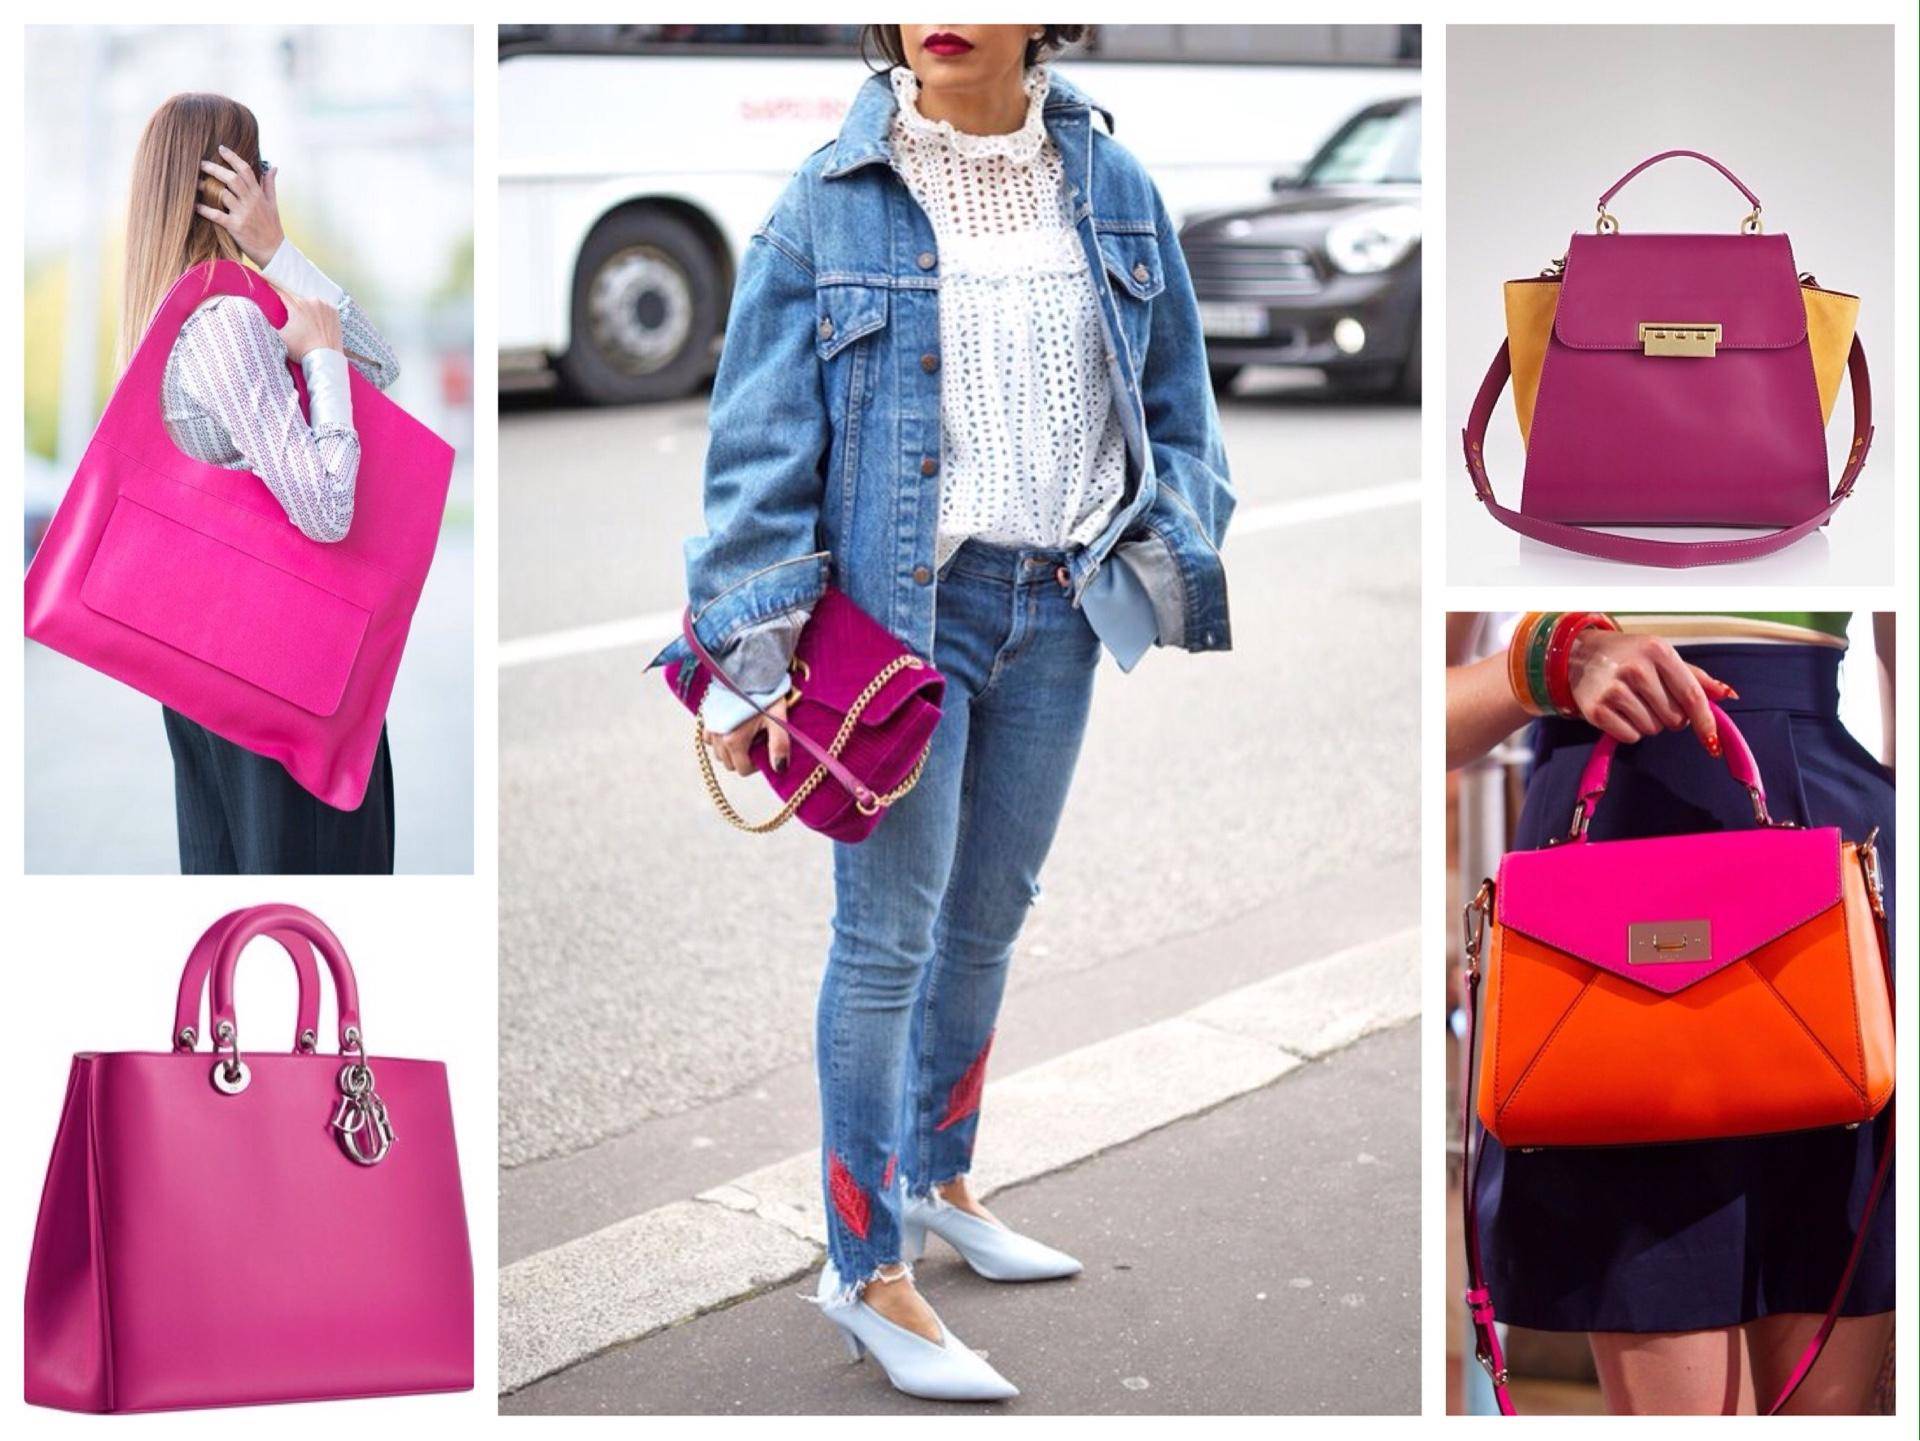 Ярко розовая сумка. Сумка цвета фуксии. Сочетание цветов в сумках. Образы с розовой сумкой.